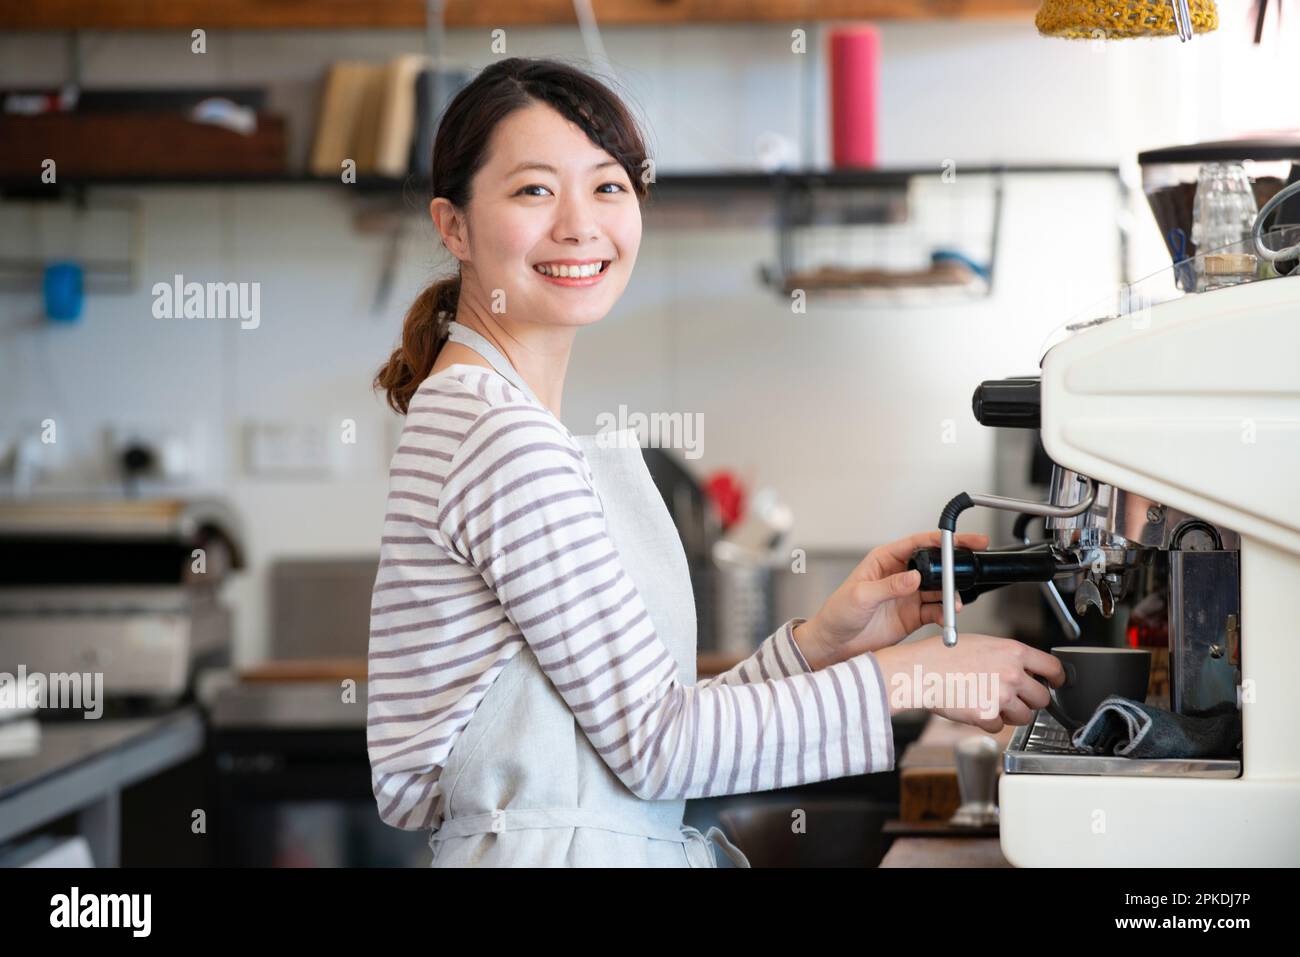 Eine Frau, die in einem Geschäft arbeitet und eine Espressomaschine mit einem Lächeln berührt Stockfoto